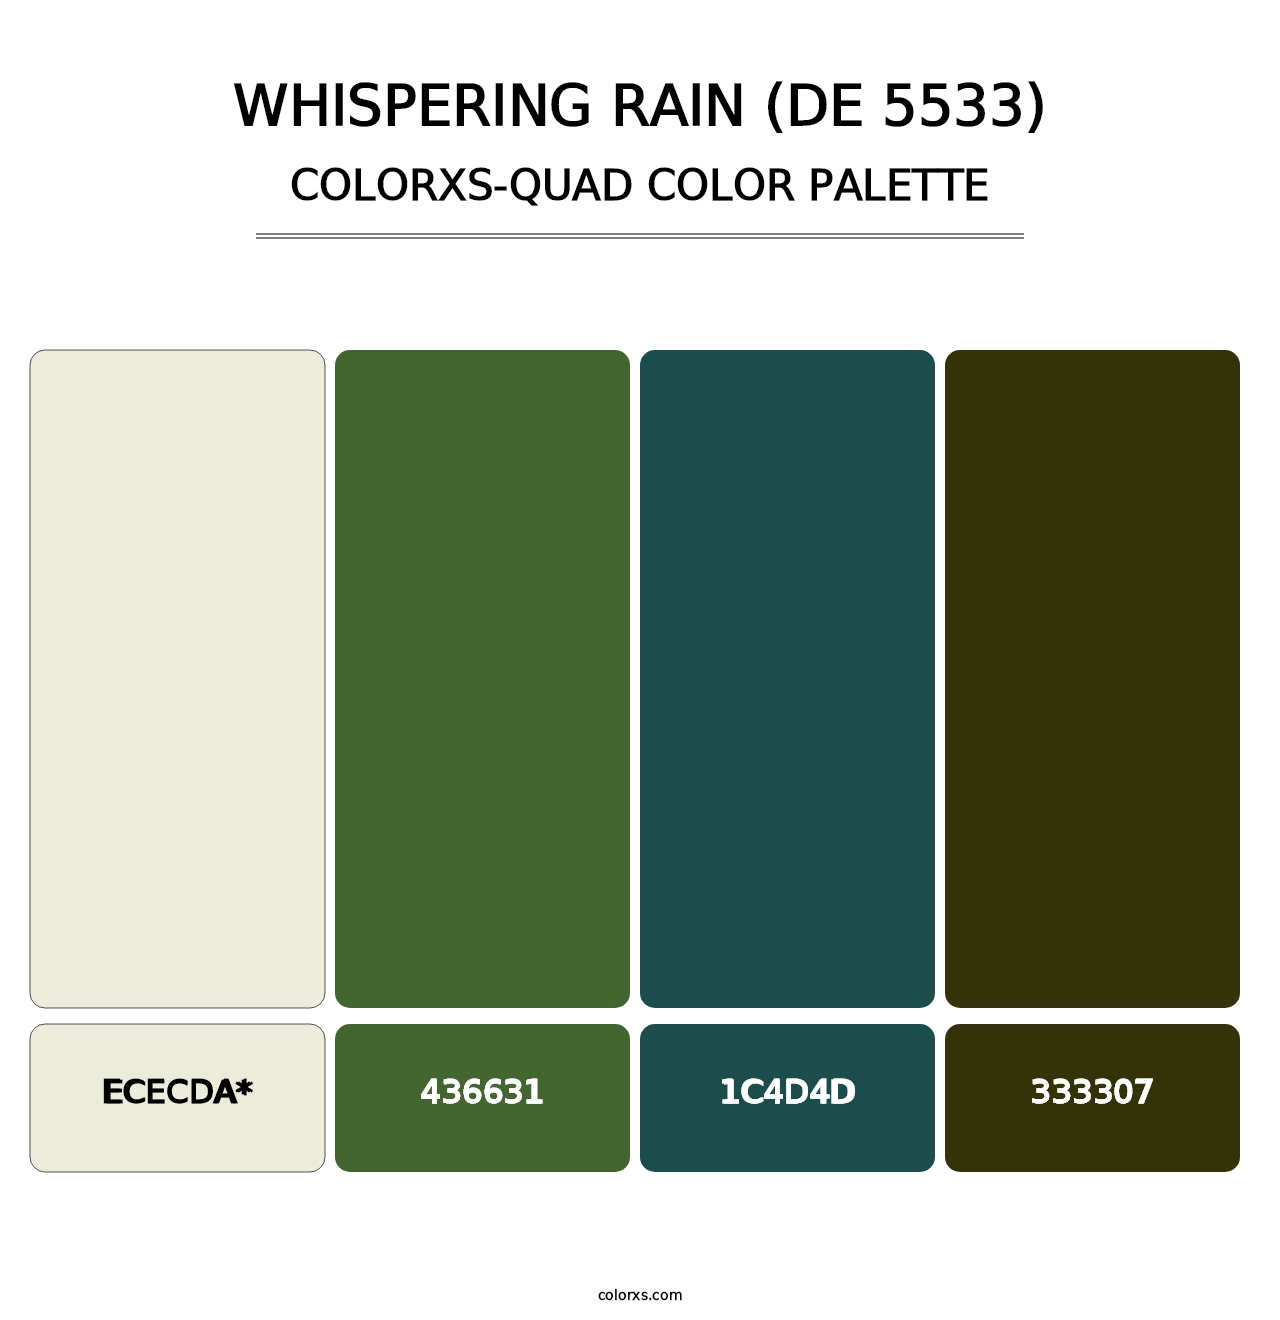 Whispering Rain (DE 5533) - Colorxs Quad Palette